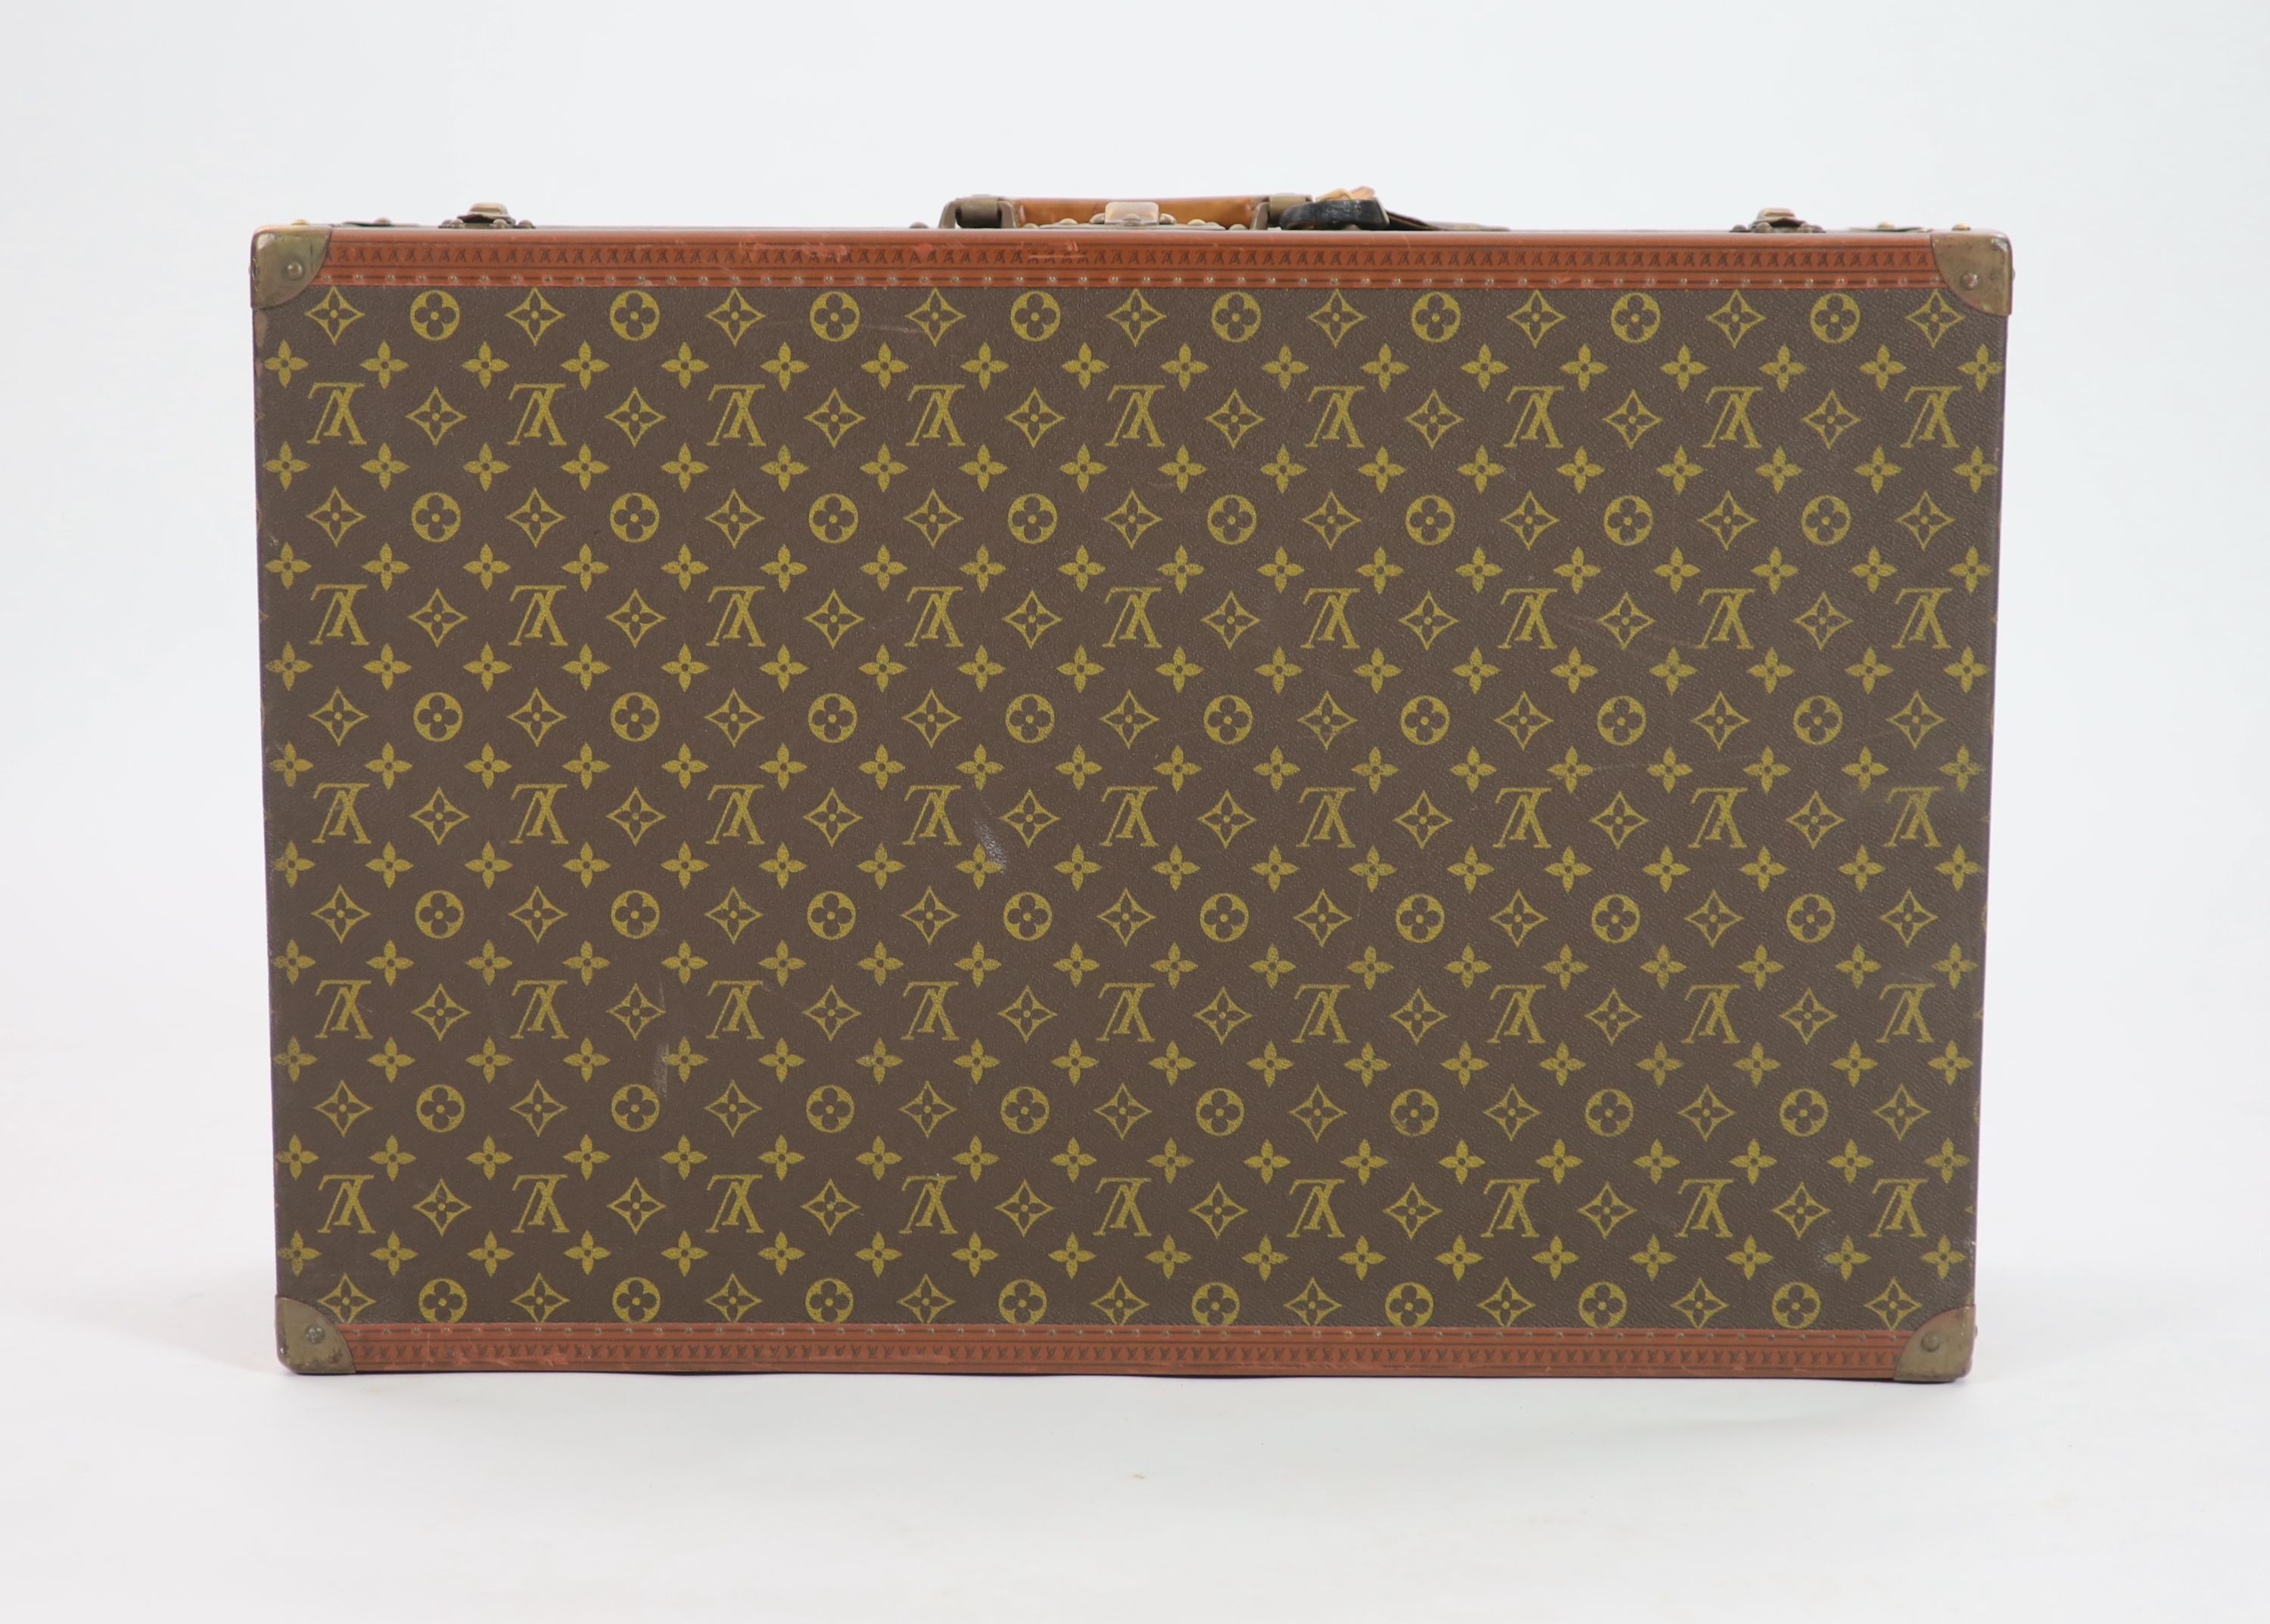 A Louis Vuitton LV pattern suitcase 70 x 47 x 22cm